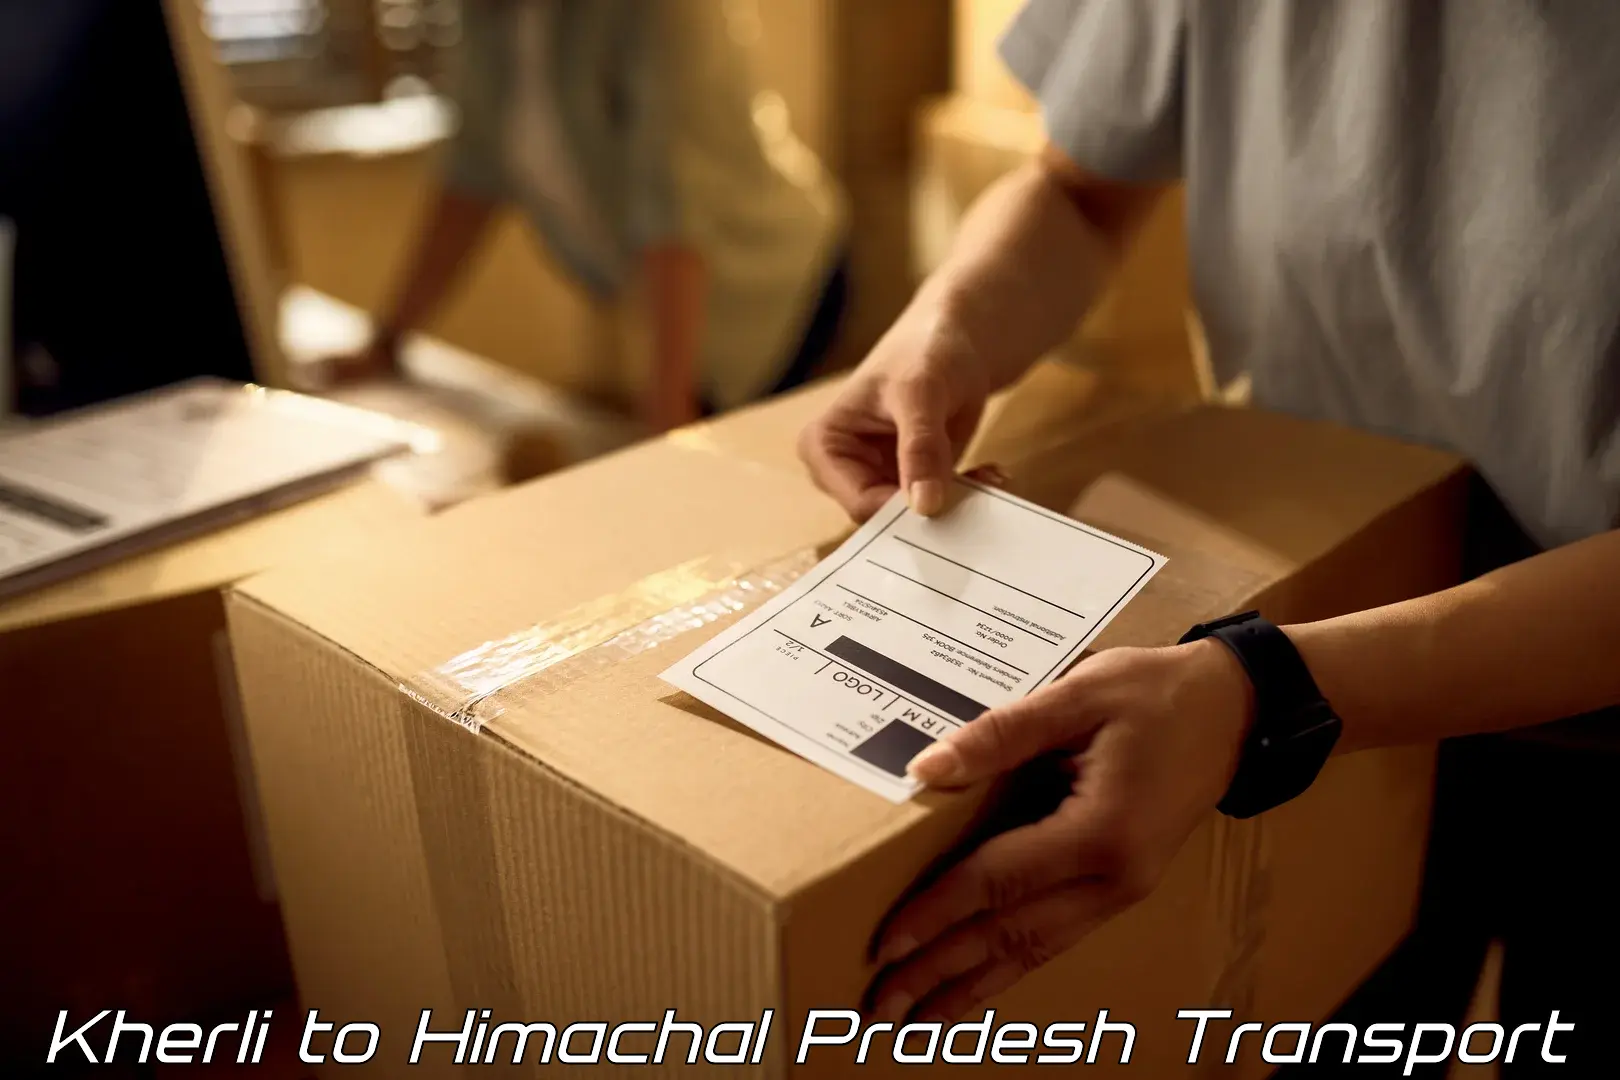 Daily parcel service transport Kherli to Sundla